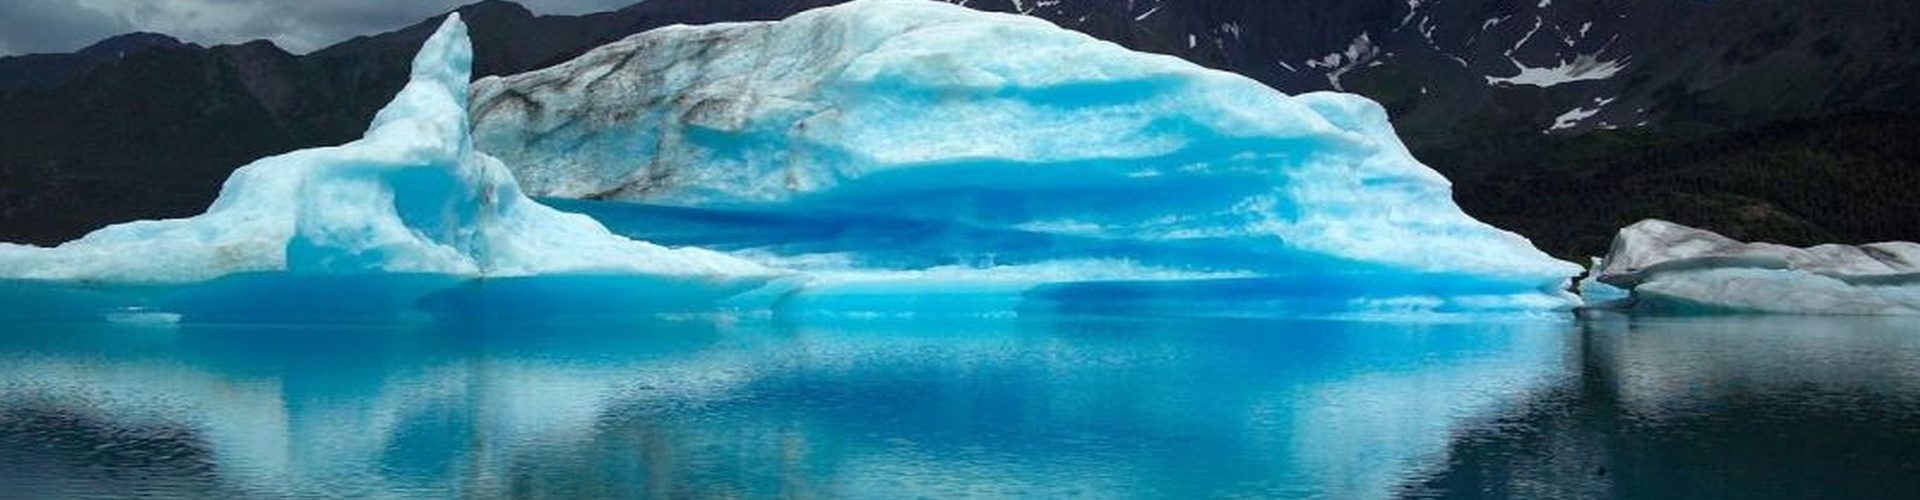 קרחונים באלסקה